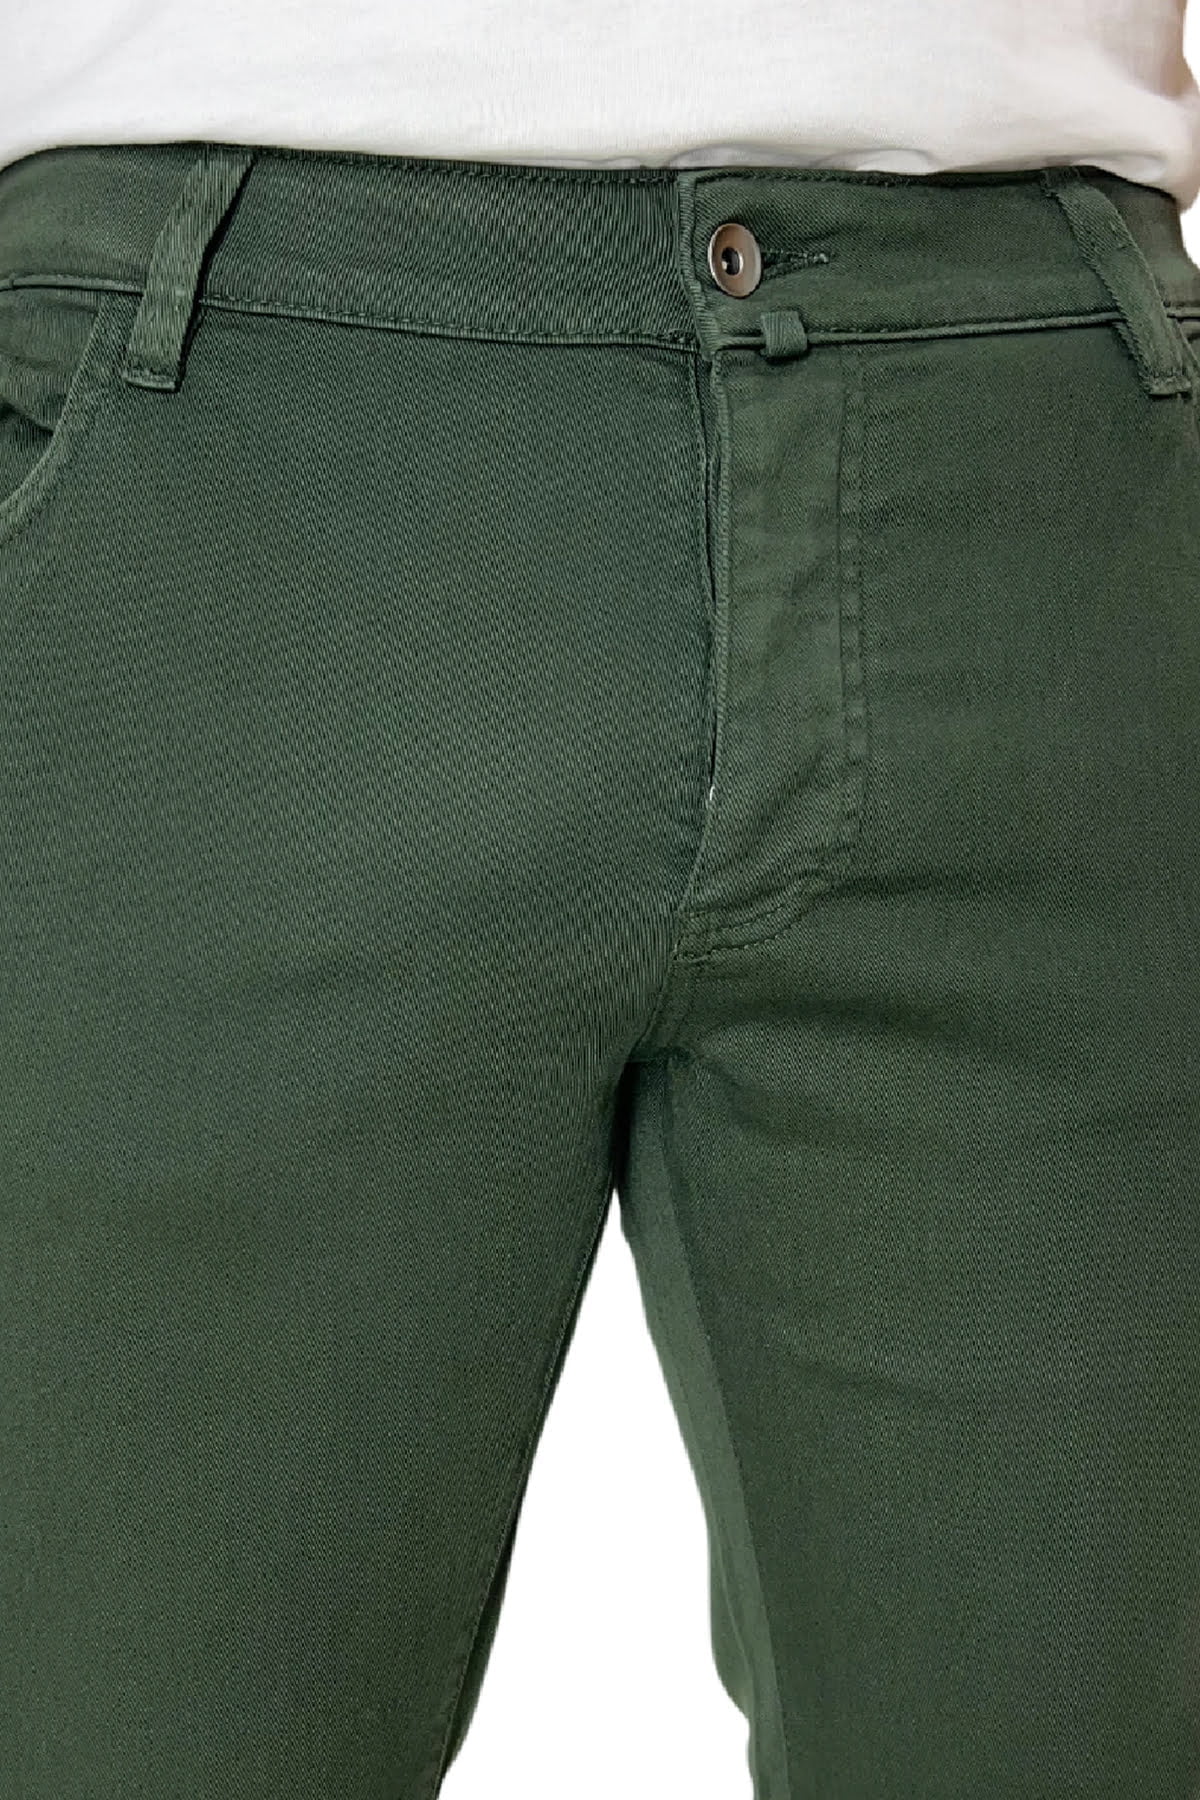 Jeans uomo verde militare tinta unita modello 5 tasche slim fit estivo made in italy